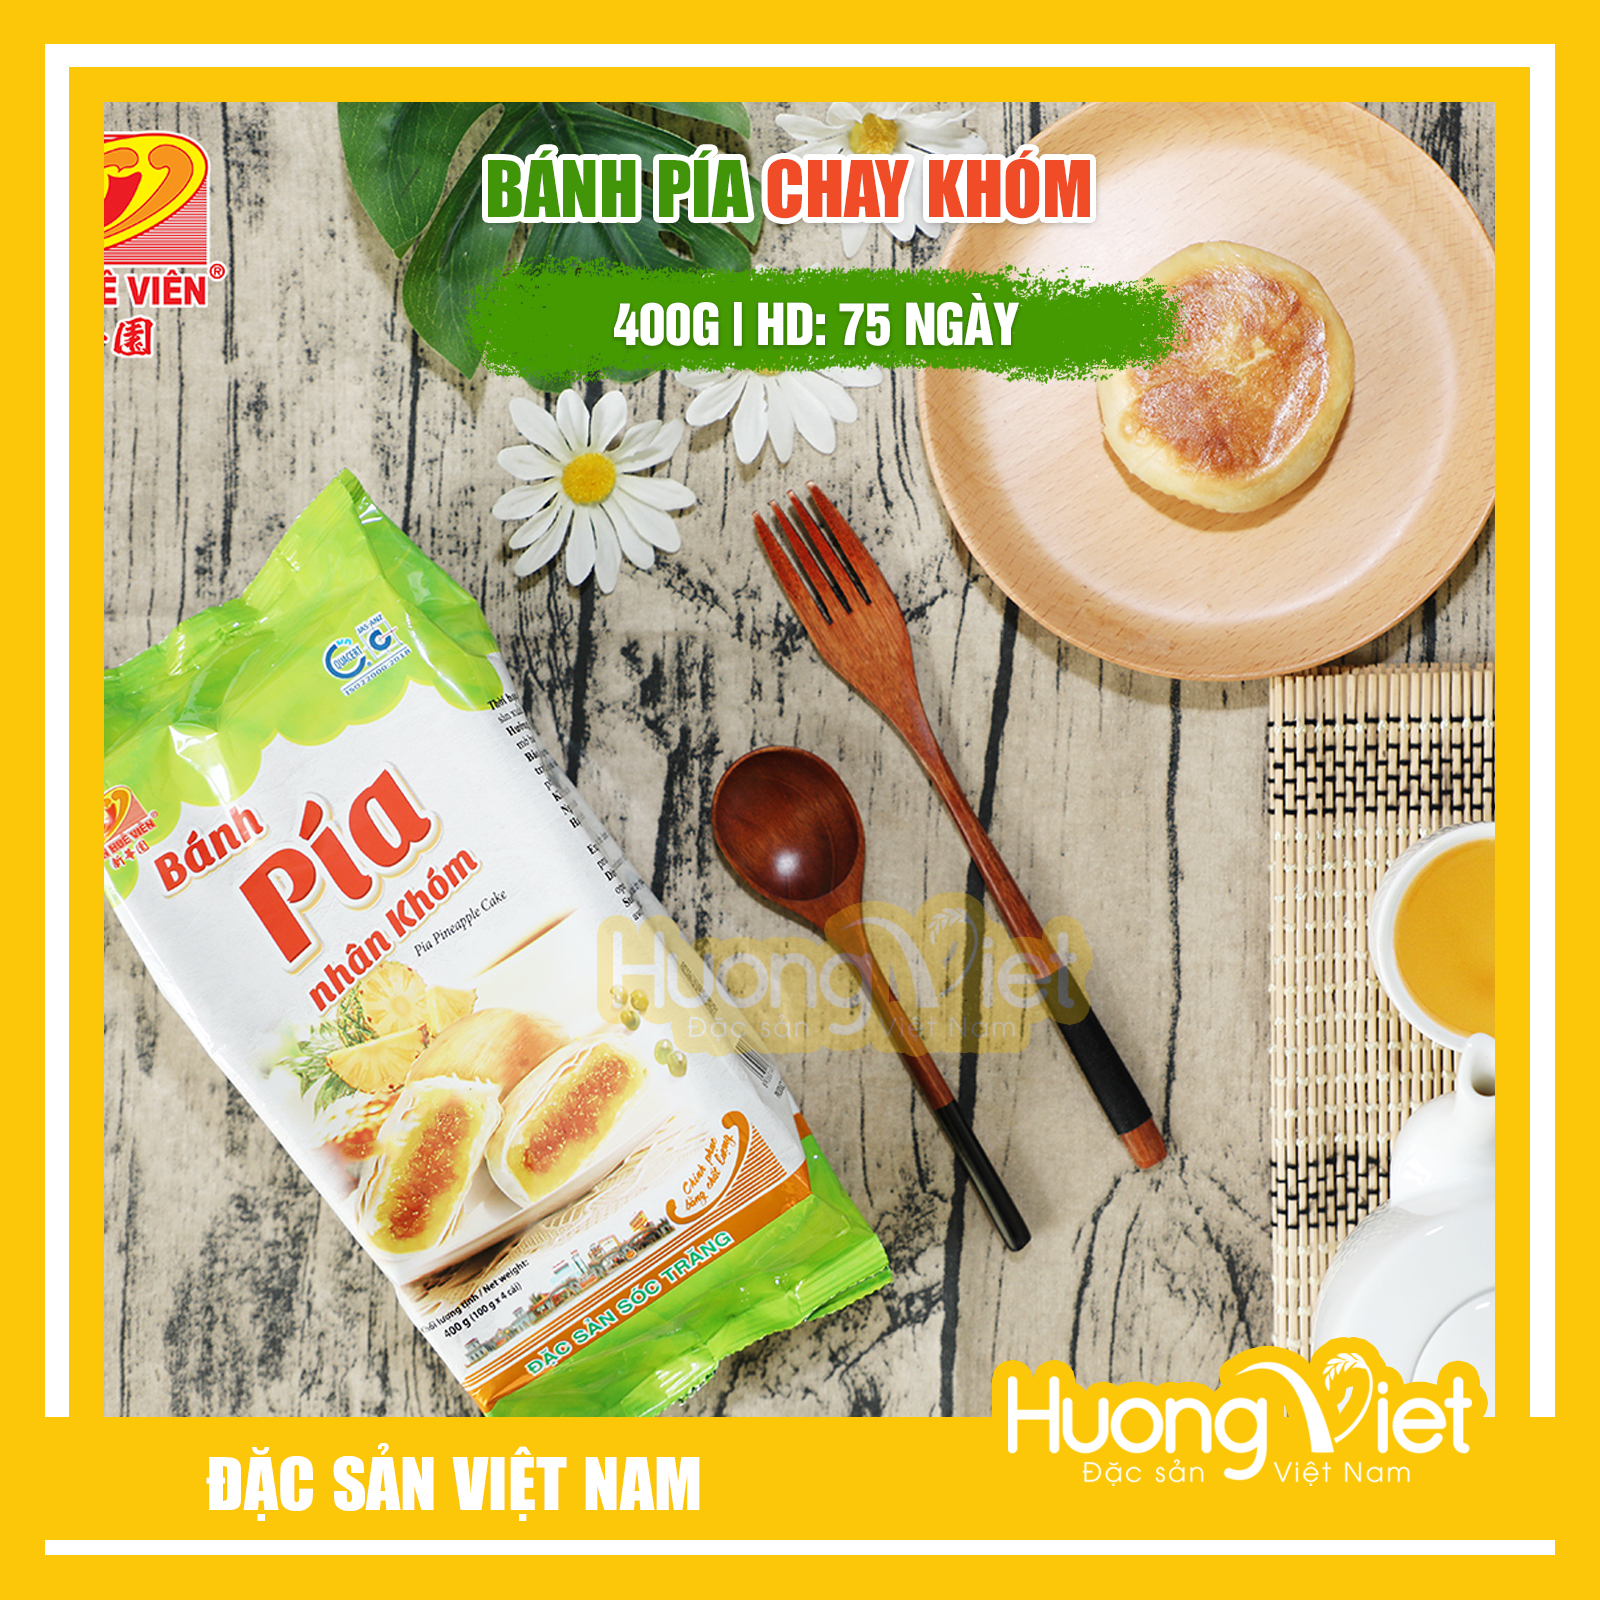 Đặc Sản Sóc Trăng - Bánh Pía Chay Khóm Không Sầu Riêng 400G, Bánh Pía Không Trứng Tân Huê Viên Sóc Trăng